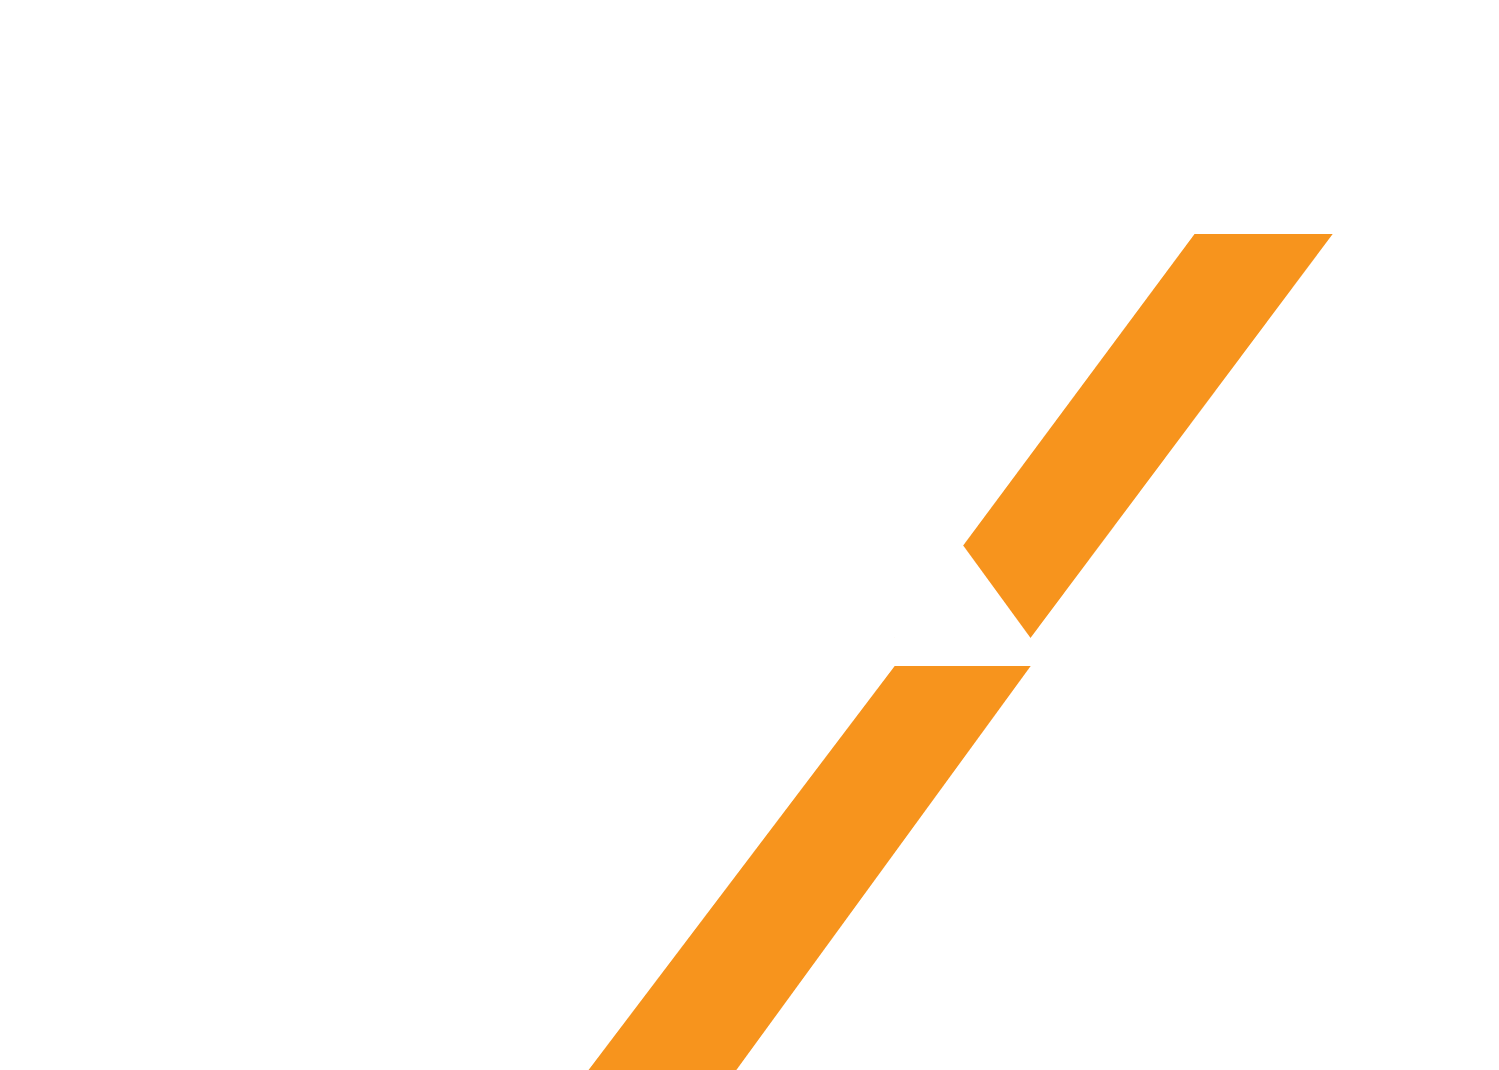 PadX logo